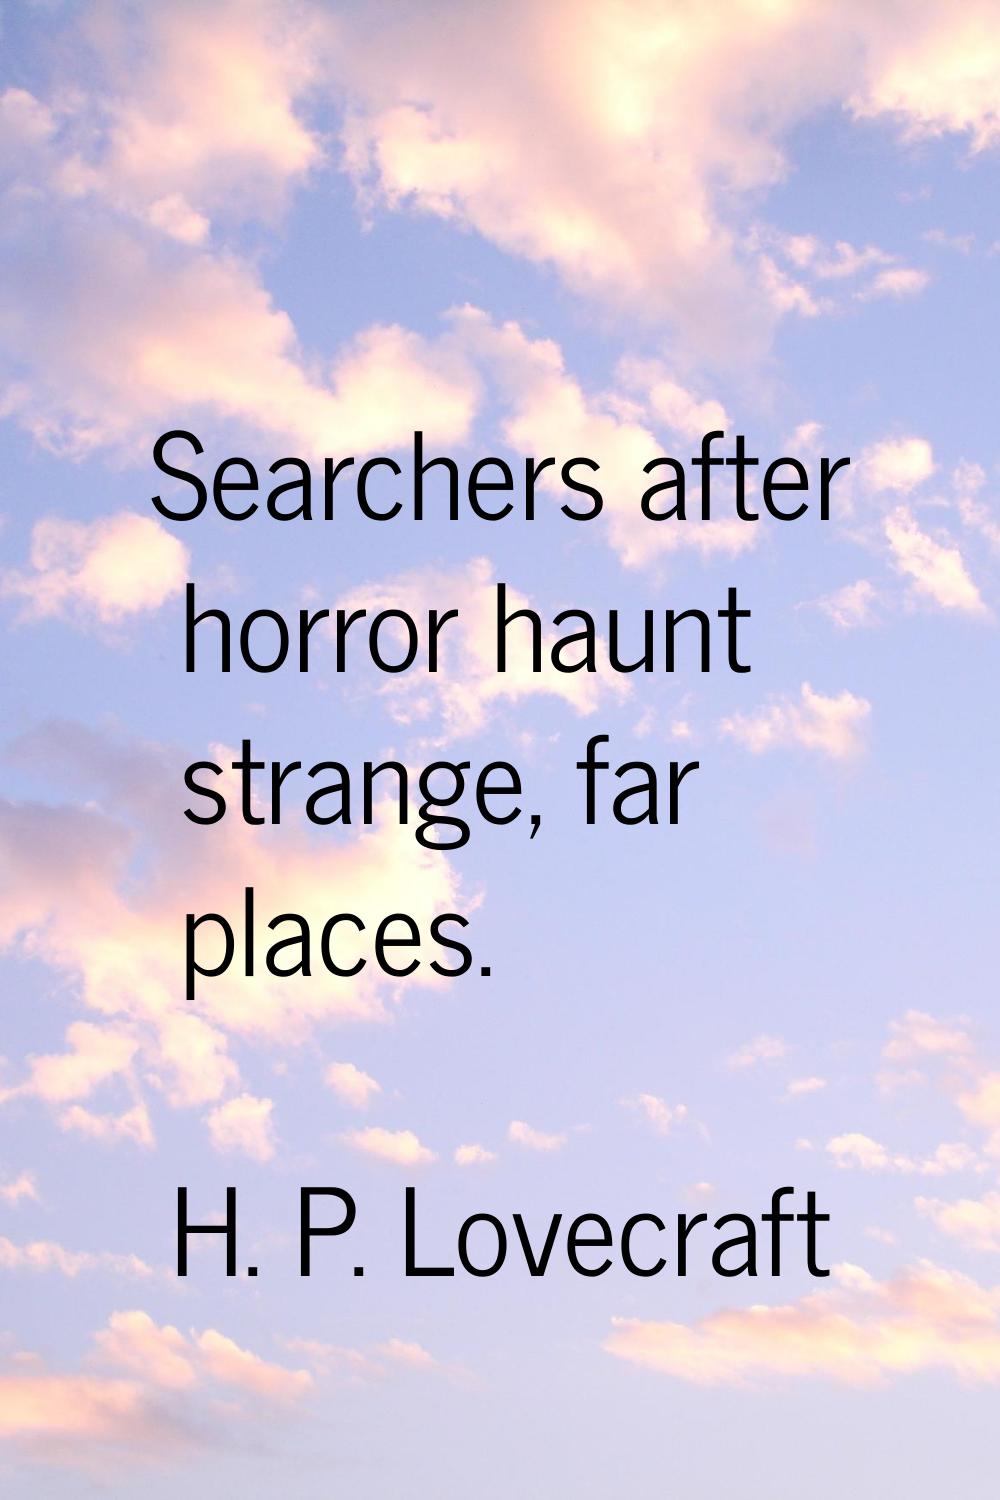 Searchers after horror haunt strange, far places.